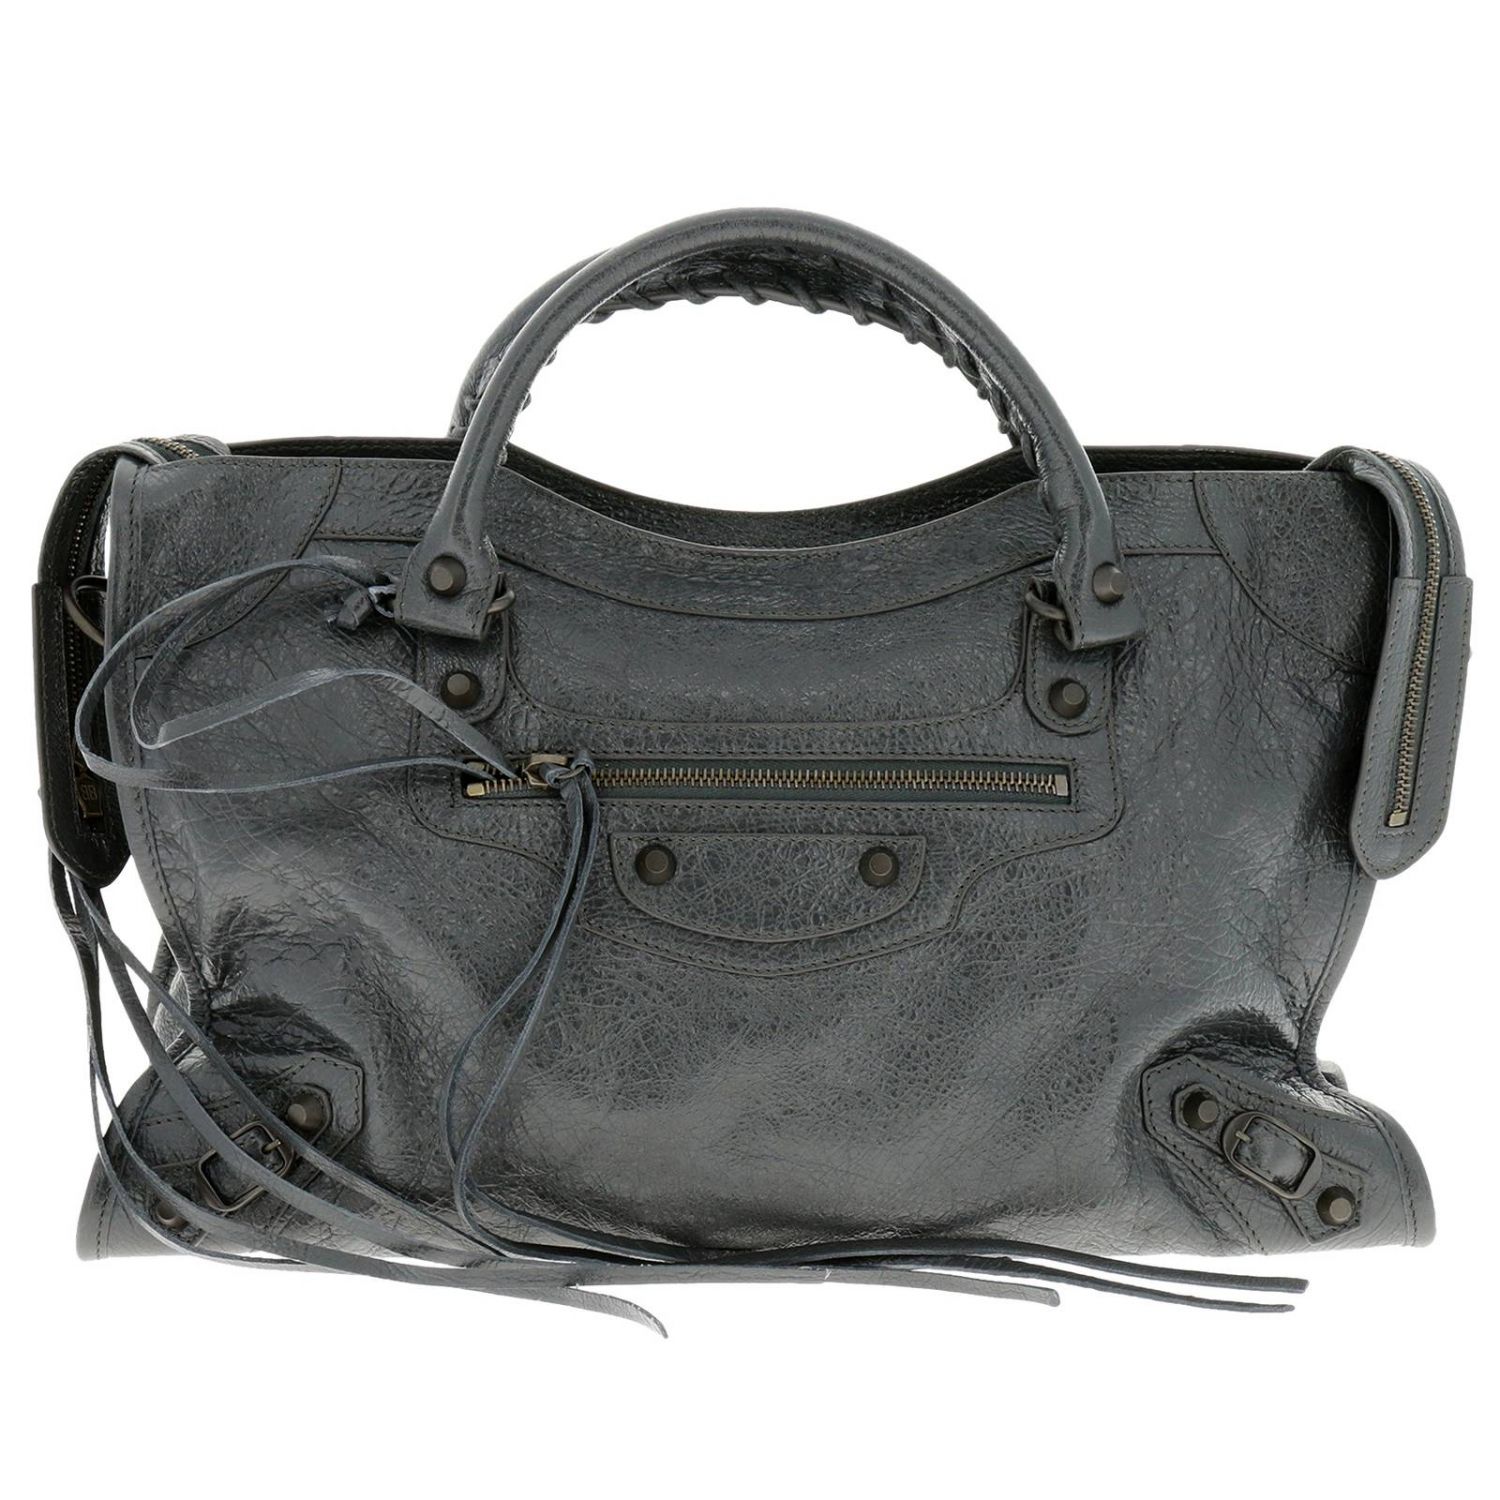 Balenciaga Outlet: Tote bags women | Tote Bags Balenciaga Women Grey ...